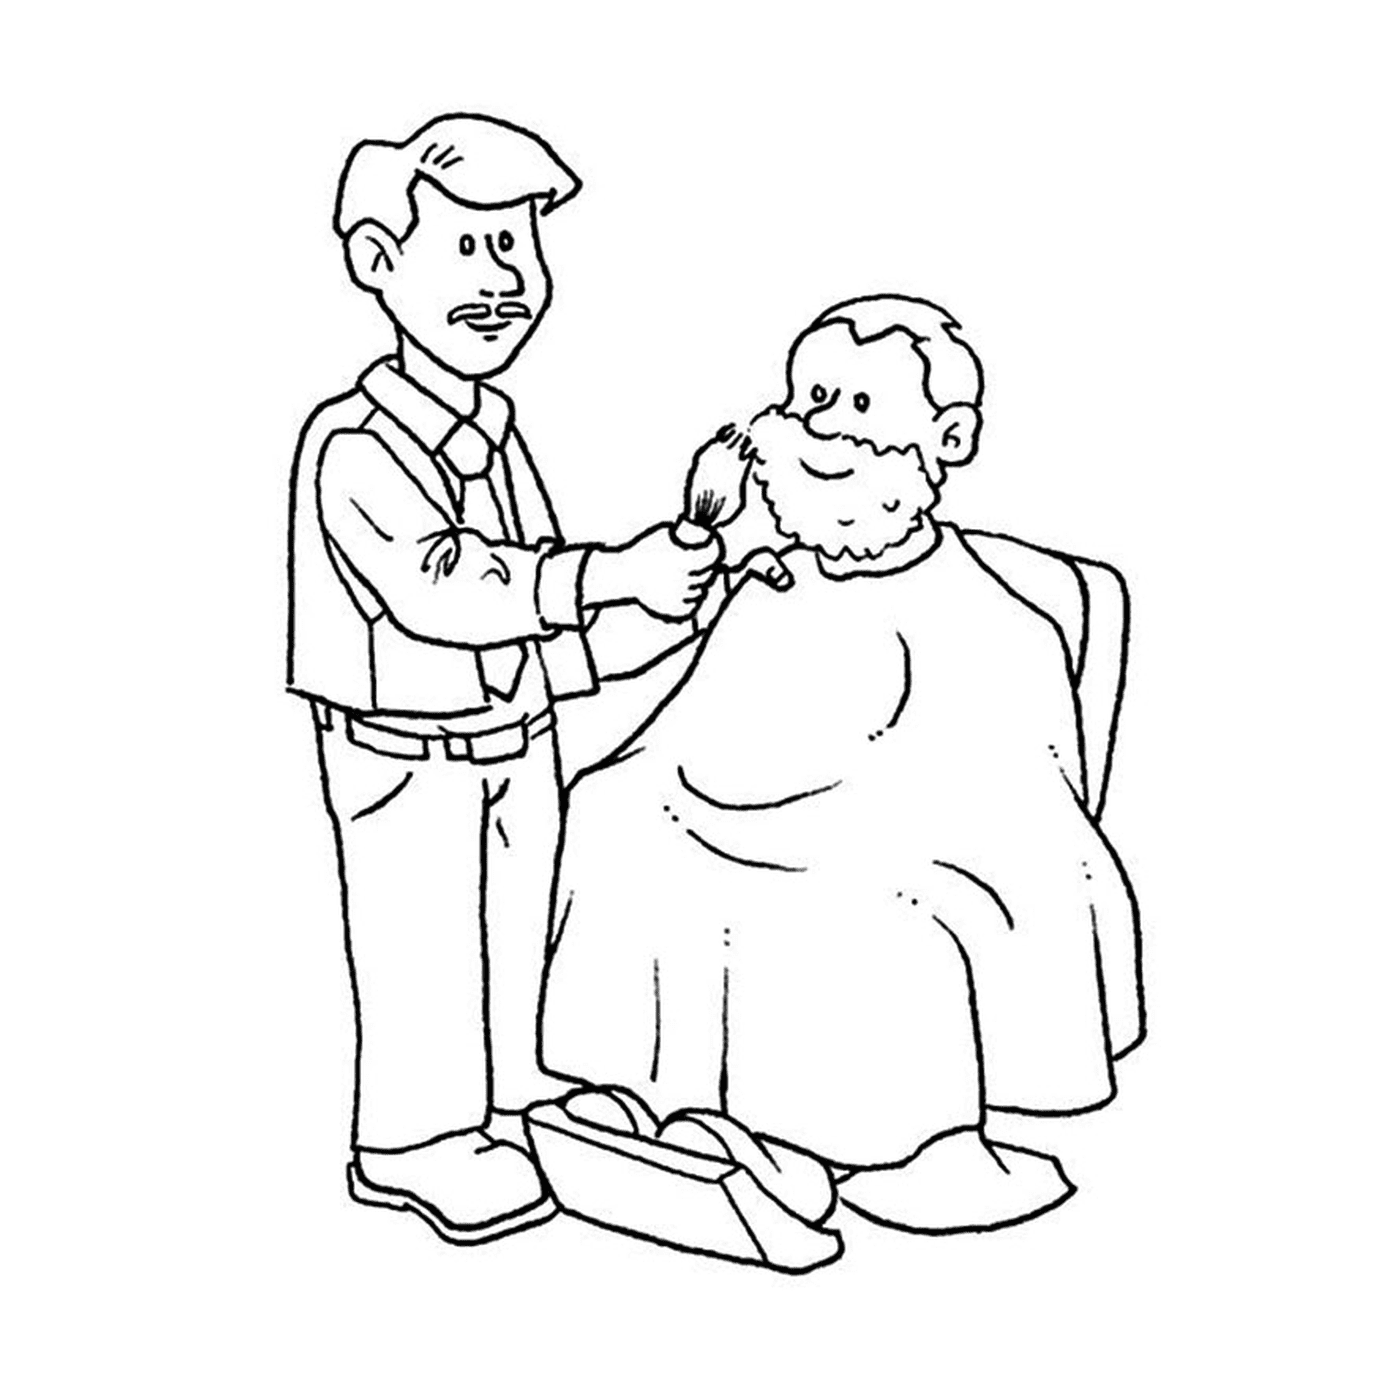  芭芭拉和一个老人 被理发师剪头发 